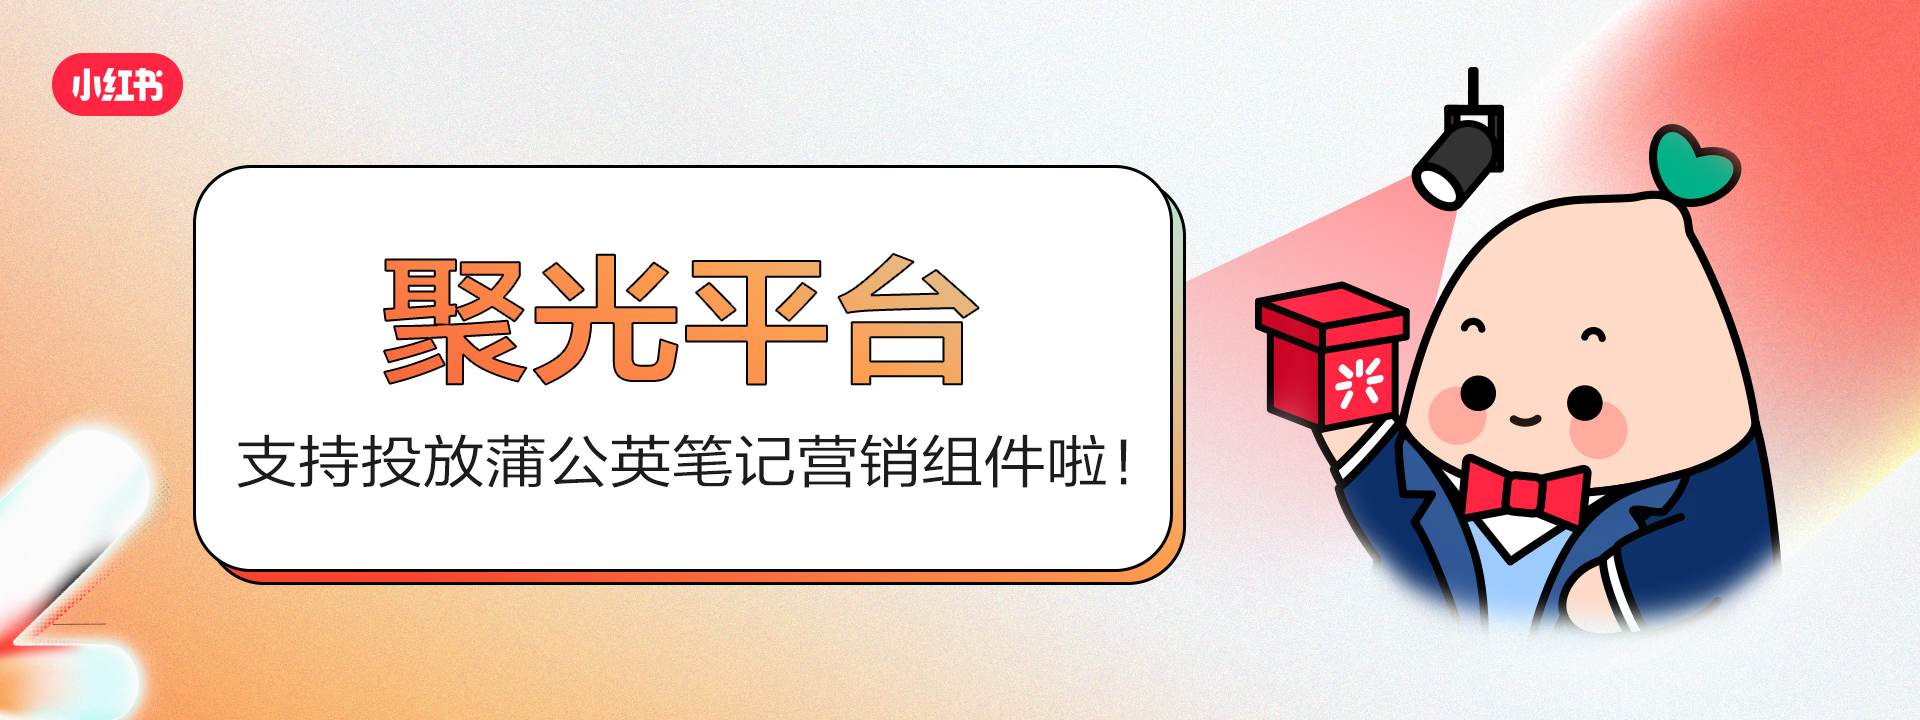 小红书聚光平台支持投放蒲公英笔记商品/店铺营销组件